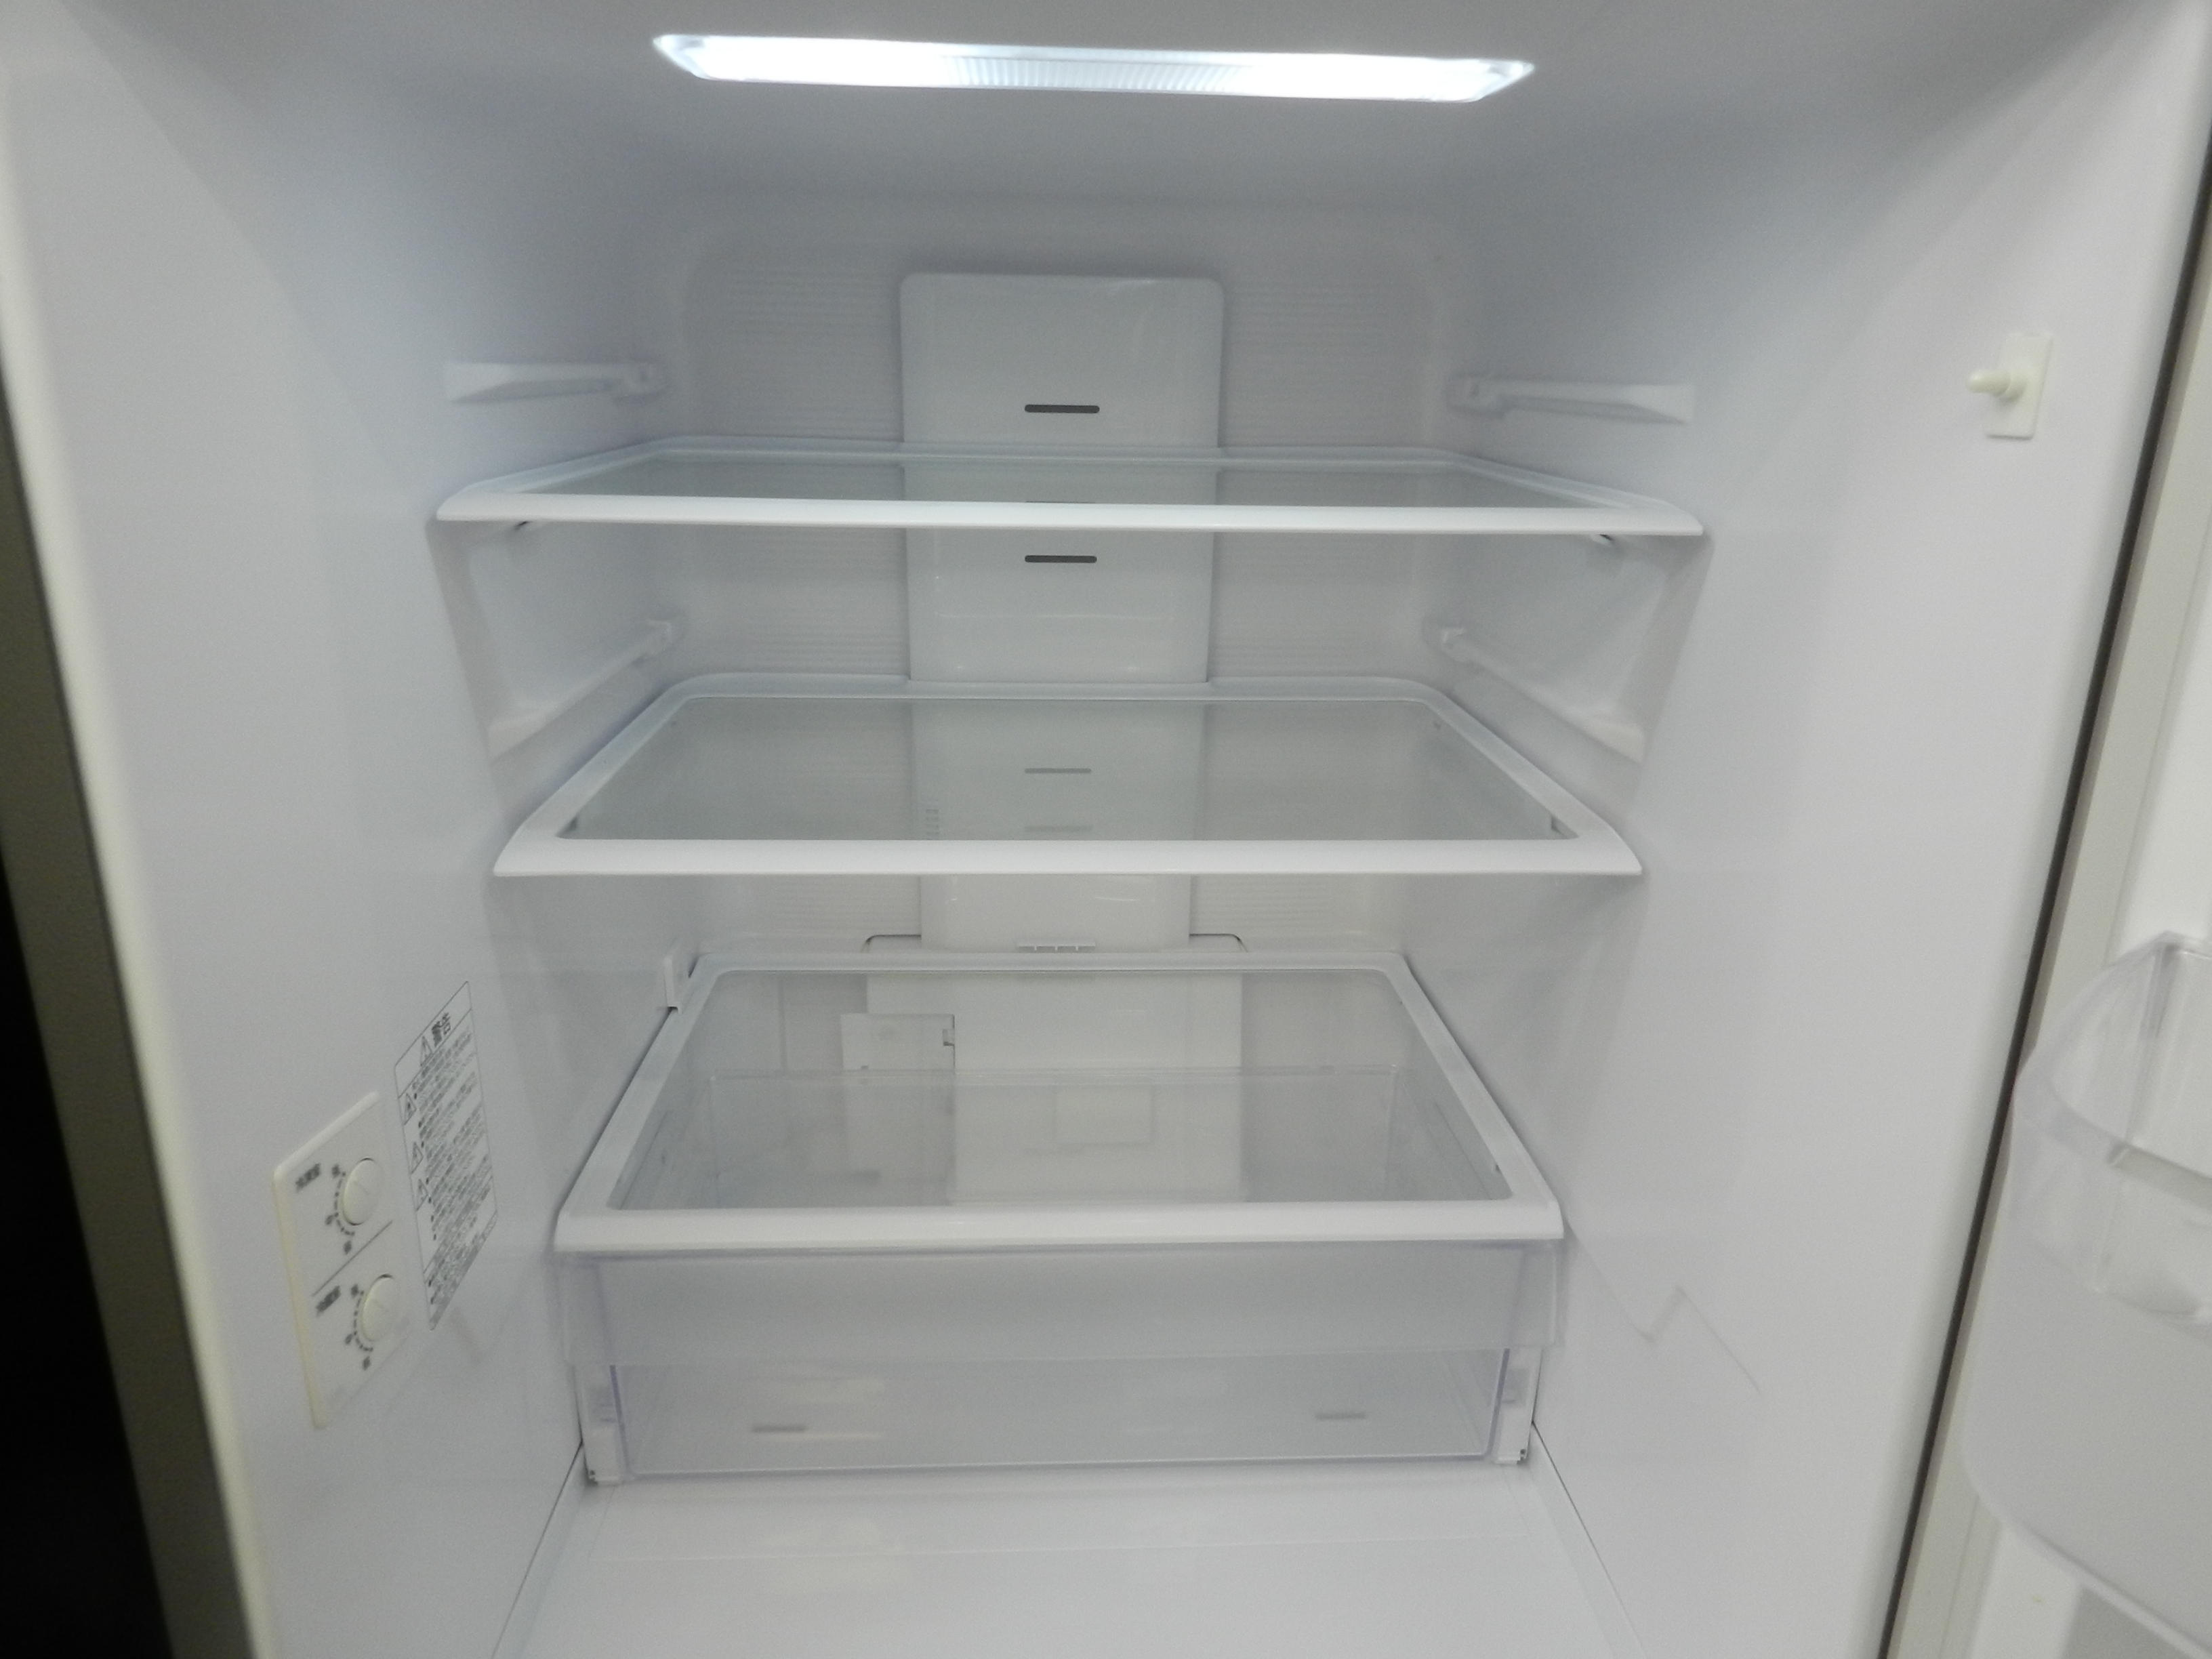 HITACHI 日立 冷蔵庫 R-27NV(N) 265L 2020年製冷蔵庫 - 冷蔵庫・冷凍庫